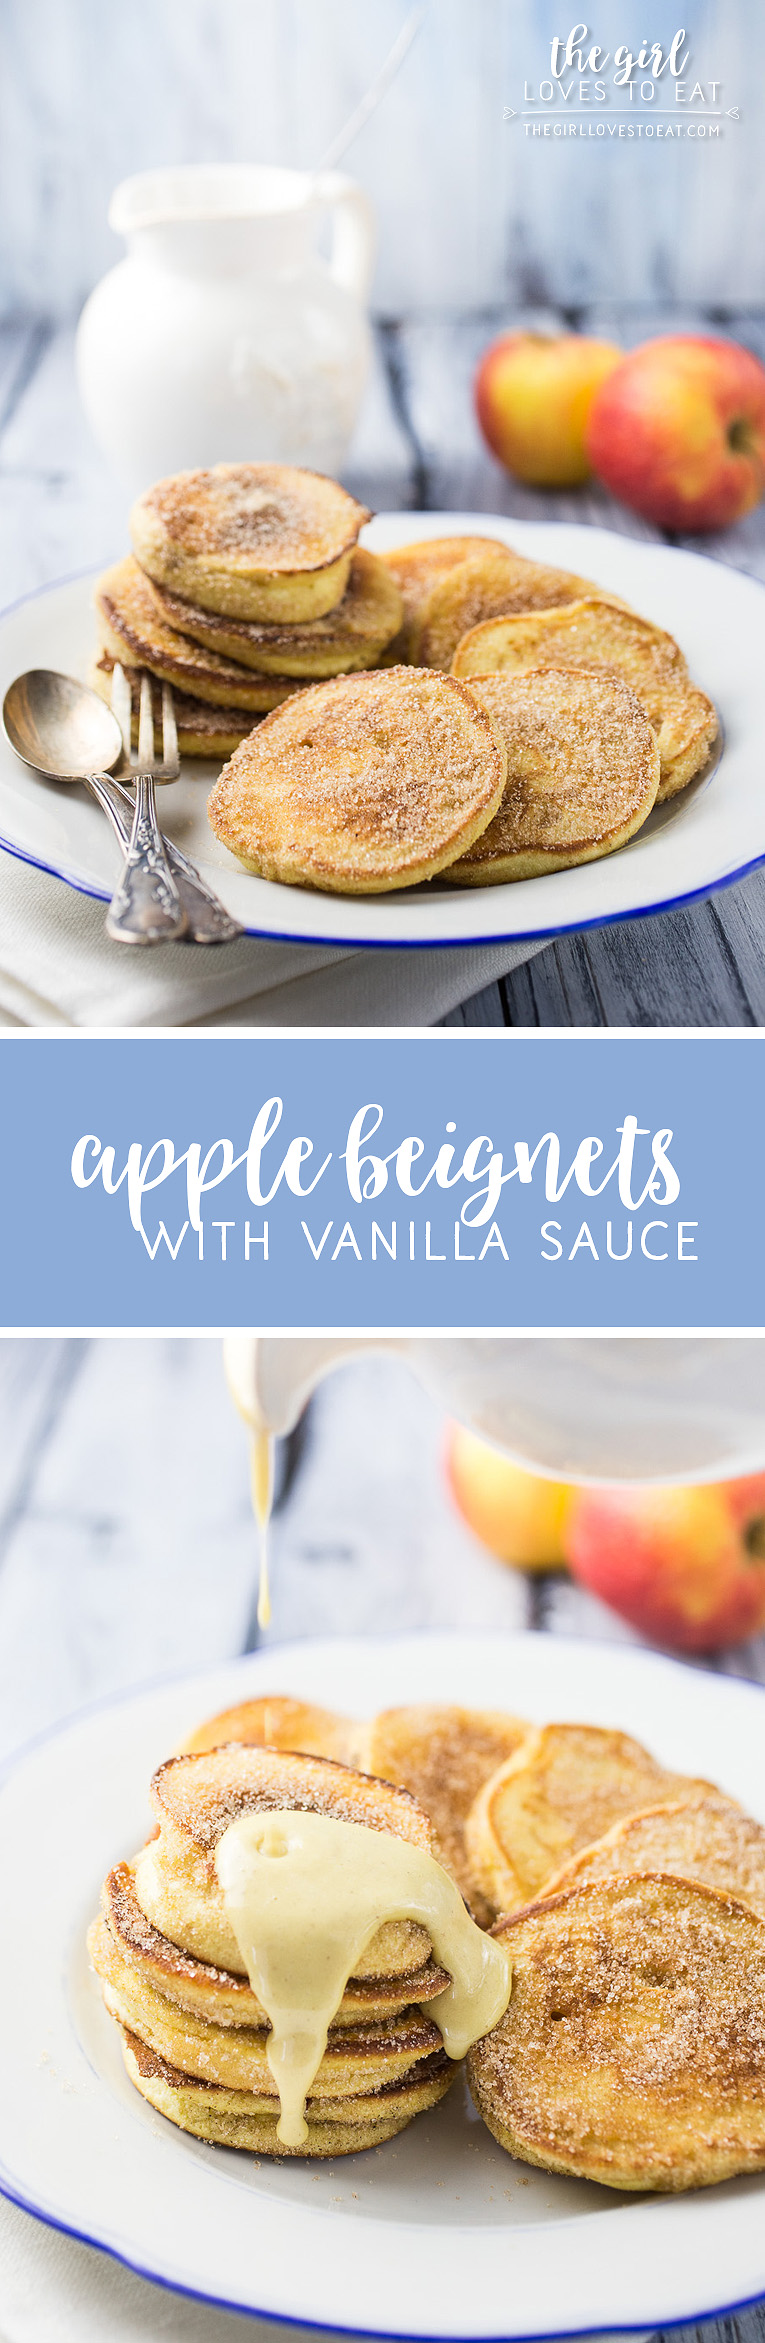 Apple beignets with vanilla sauce { thegirllovestoeat.com }